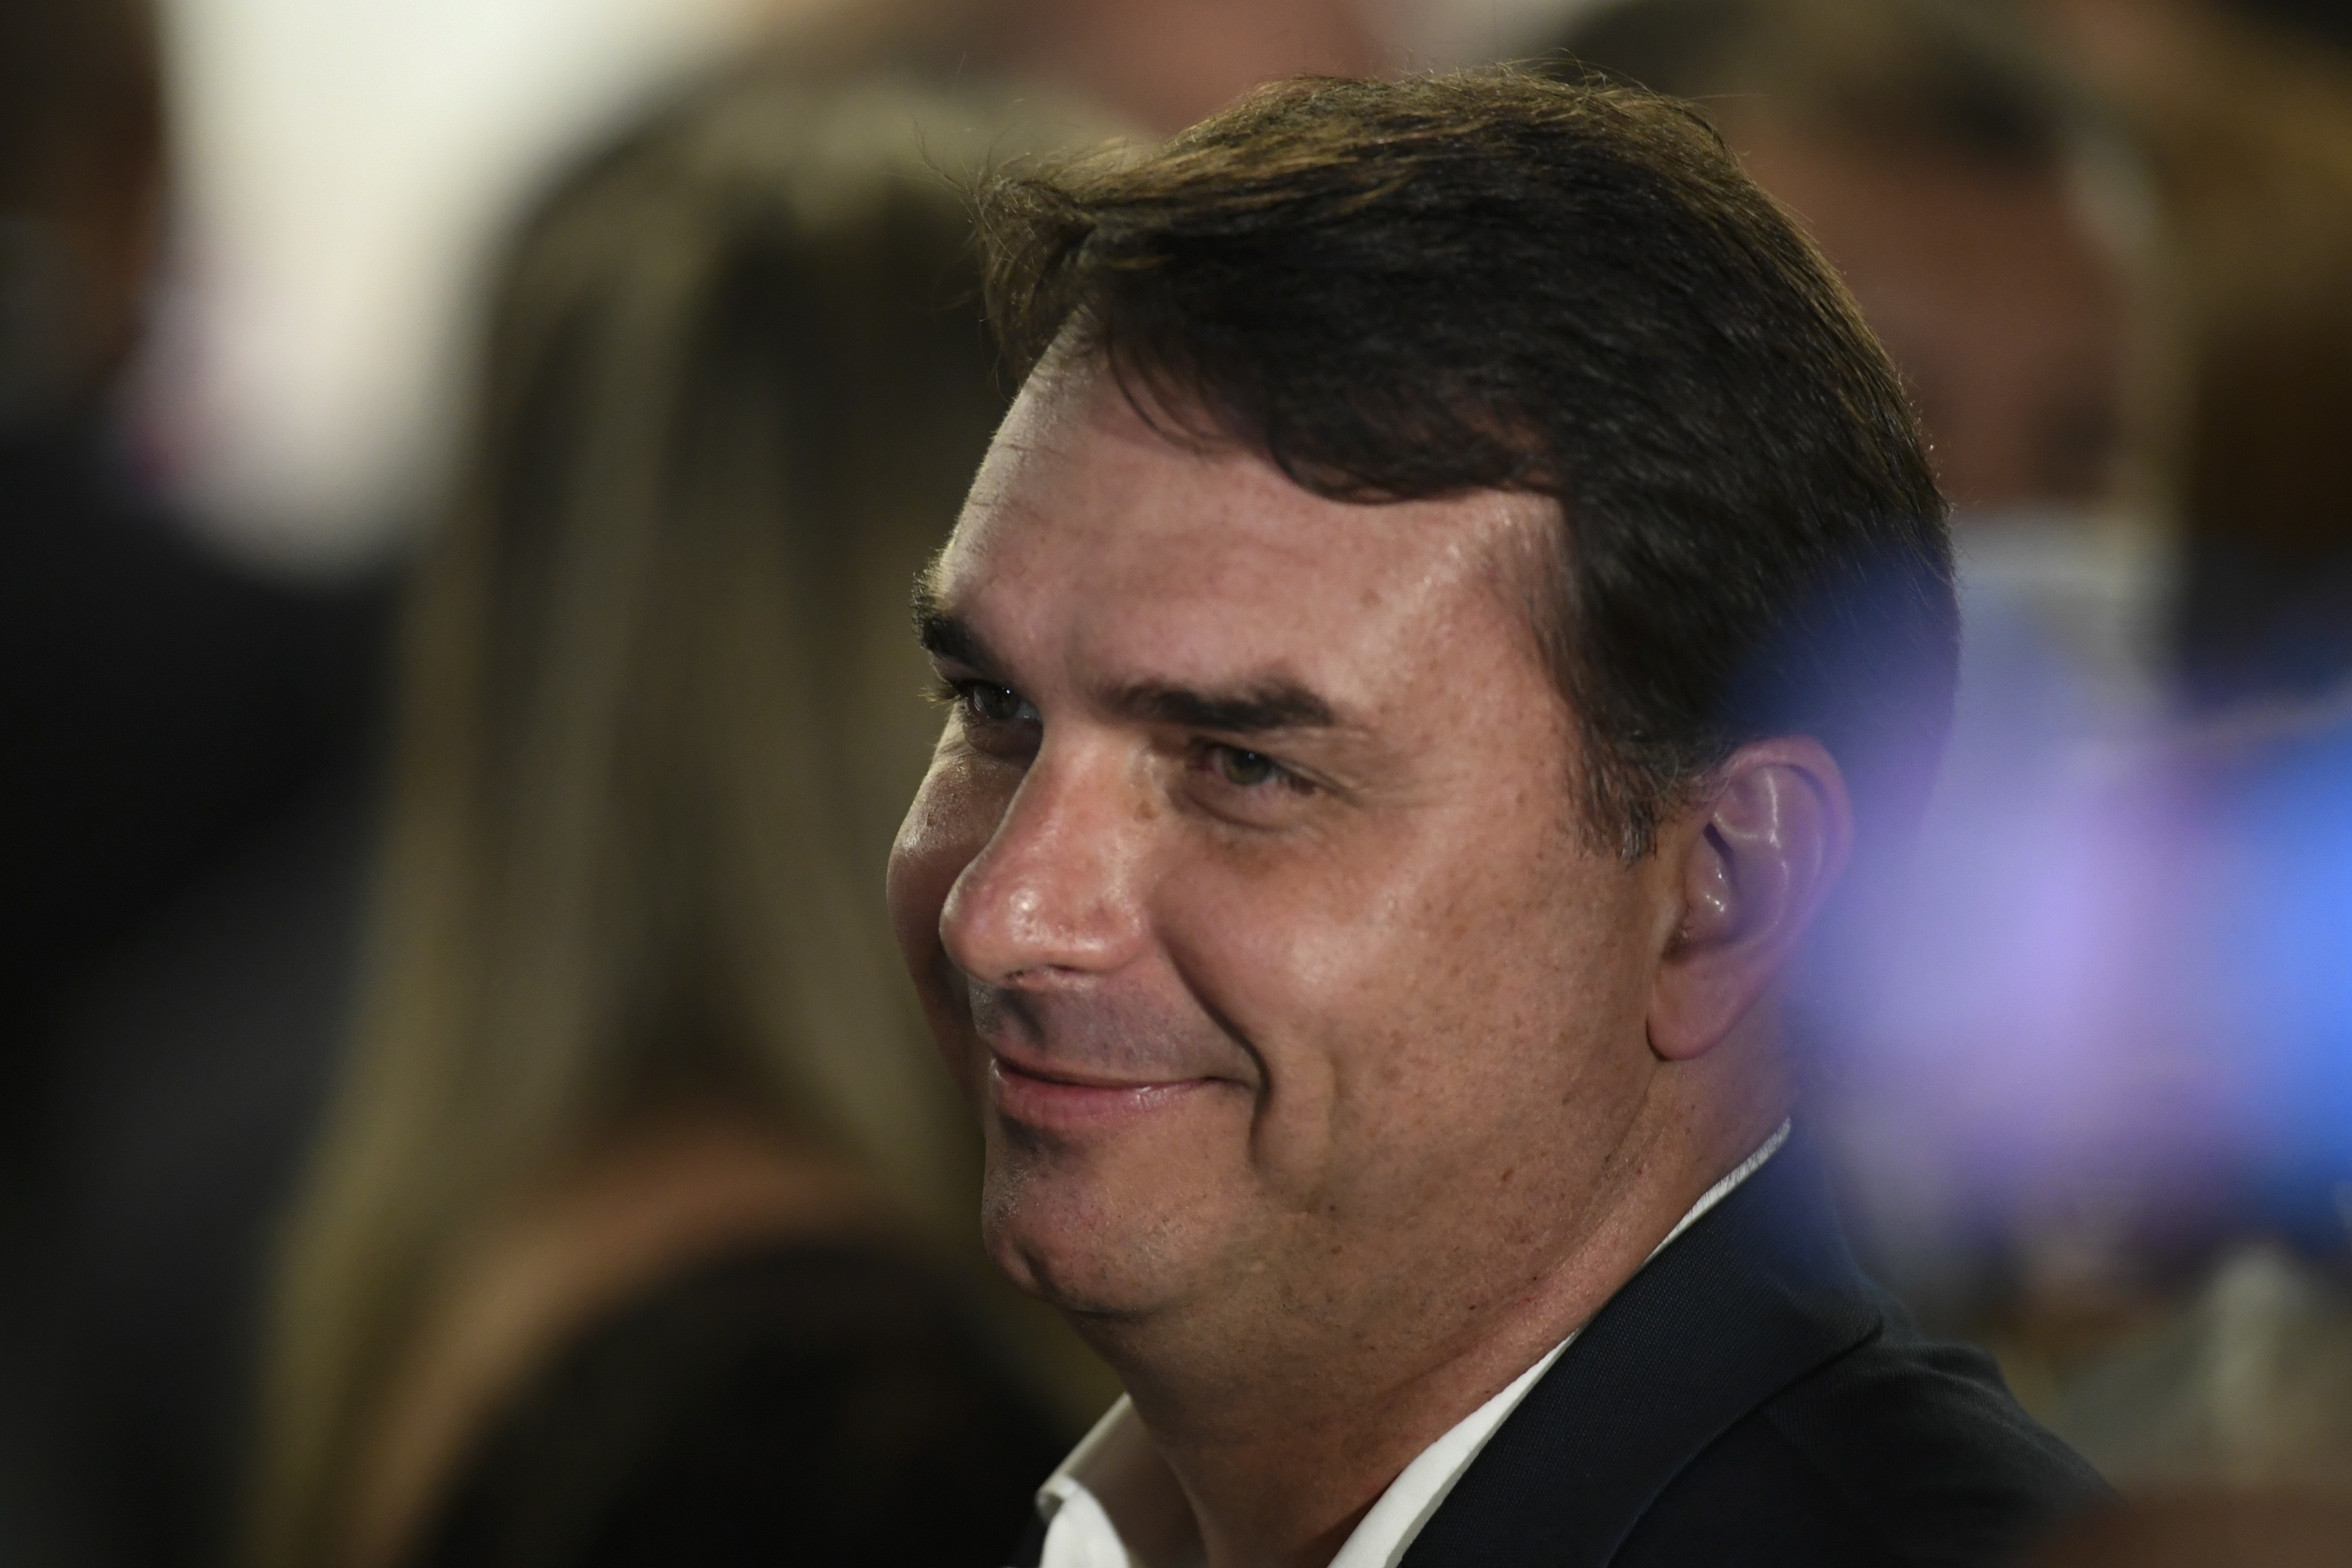 Conselho de Ética adia análise de ação contra Flavio Bolsonaro por suposta ligação com milícia